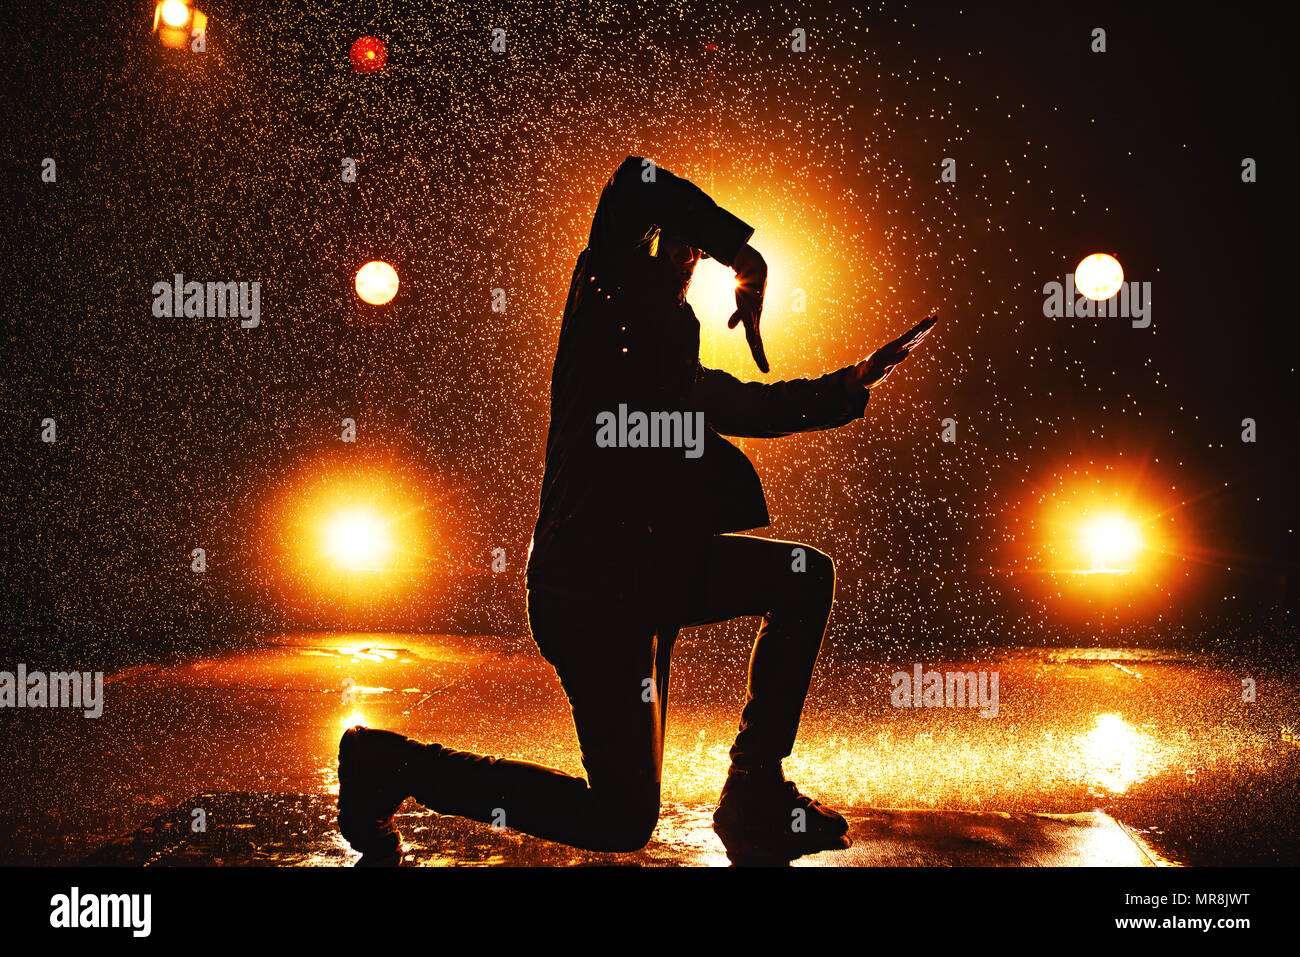 Joven bailarina ruptura dramática silueta en el club con luces y agua Foto de stock